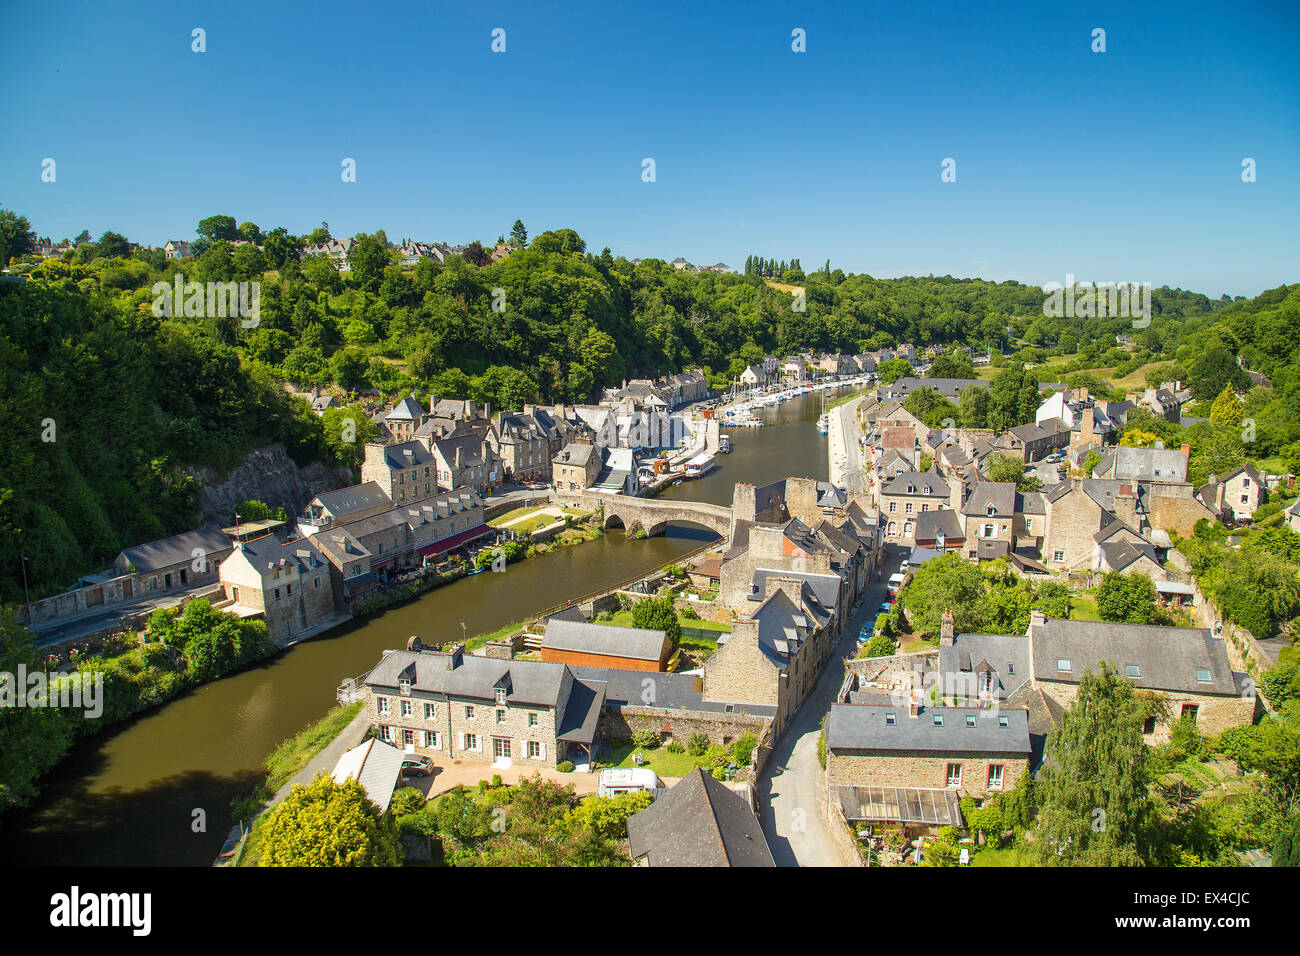 Hafen von Dinan auf dem Fluss Rance in der nördlichen Bretagne, Frankreich, zeigt den alten Häusern und den Fluss. Stockfoto